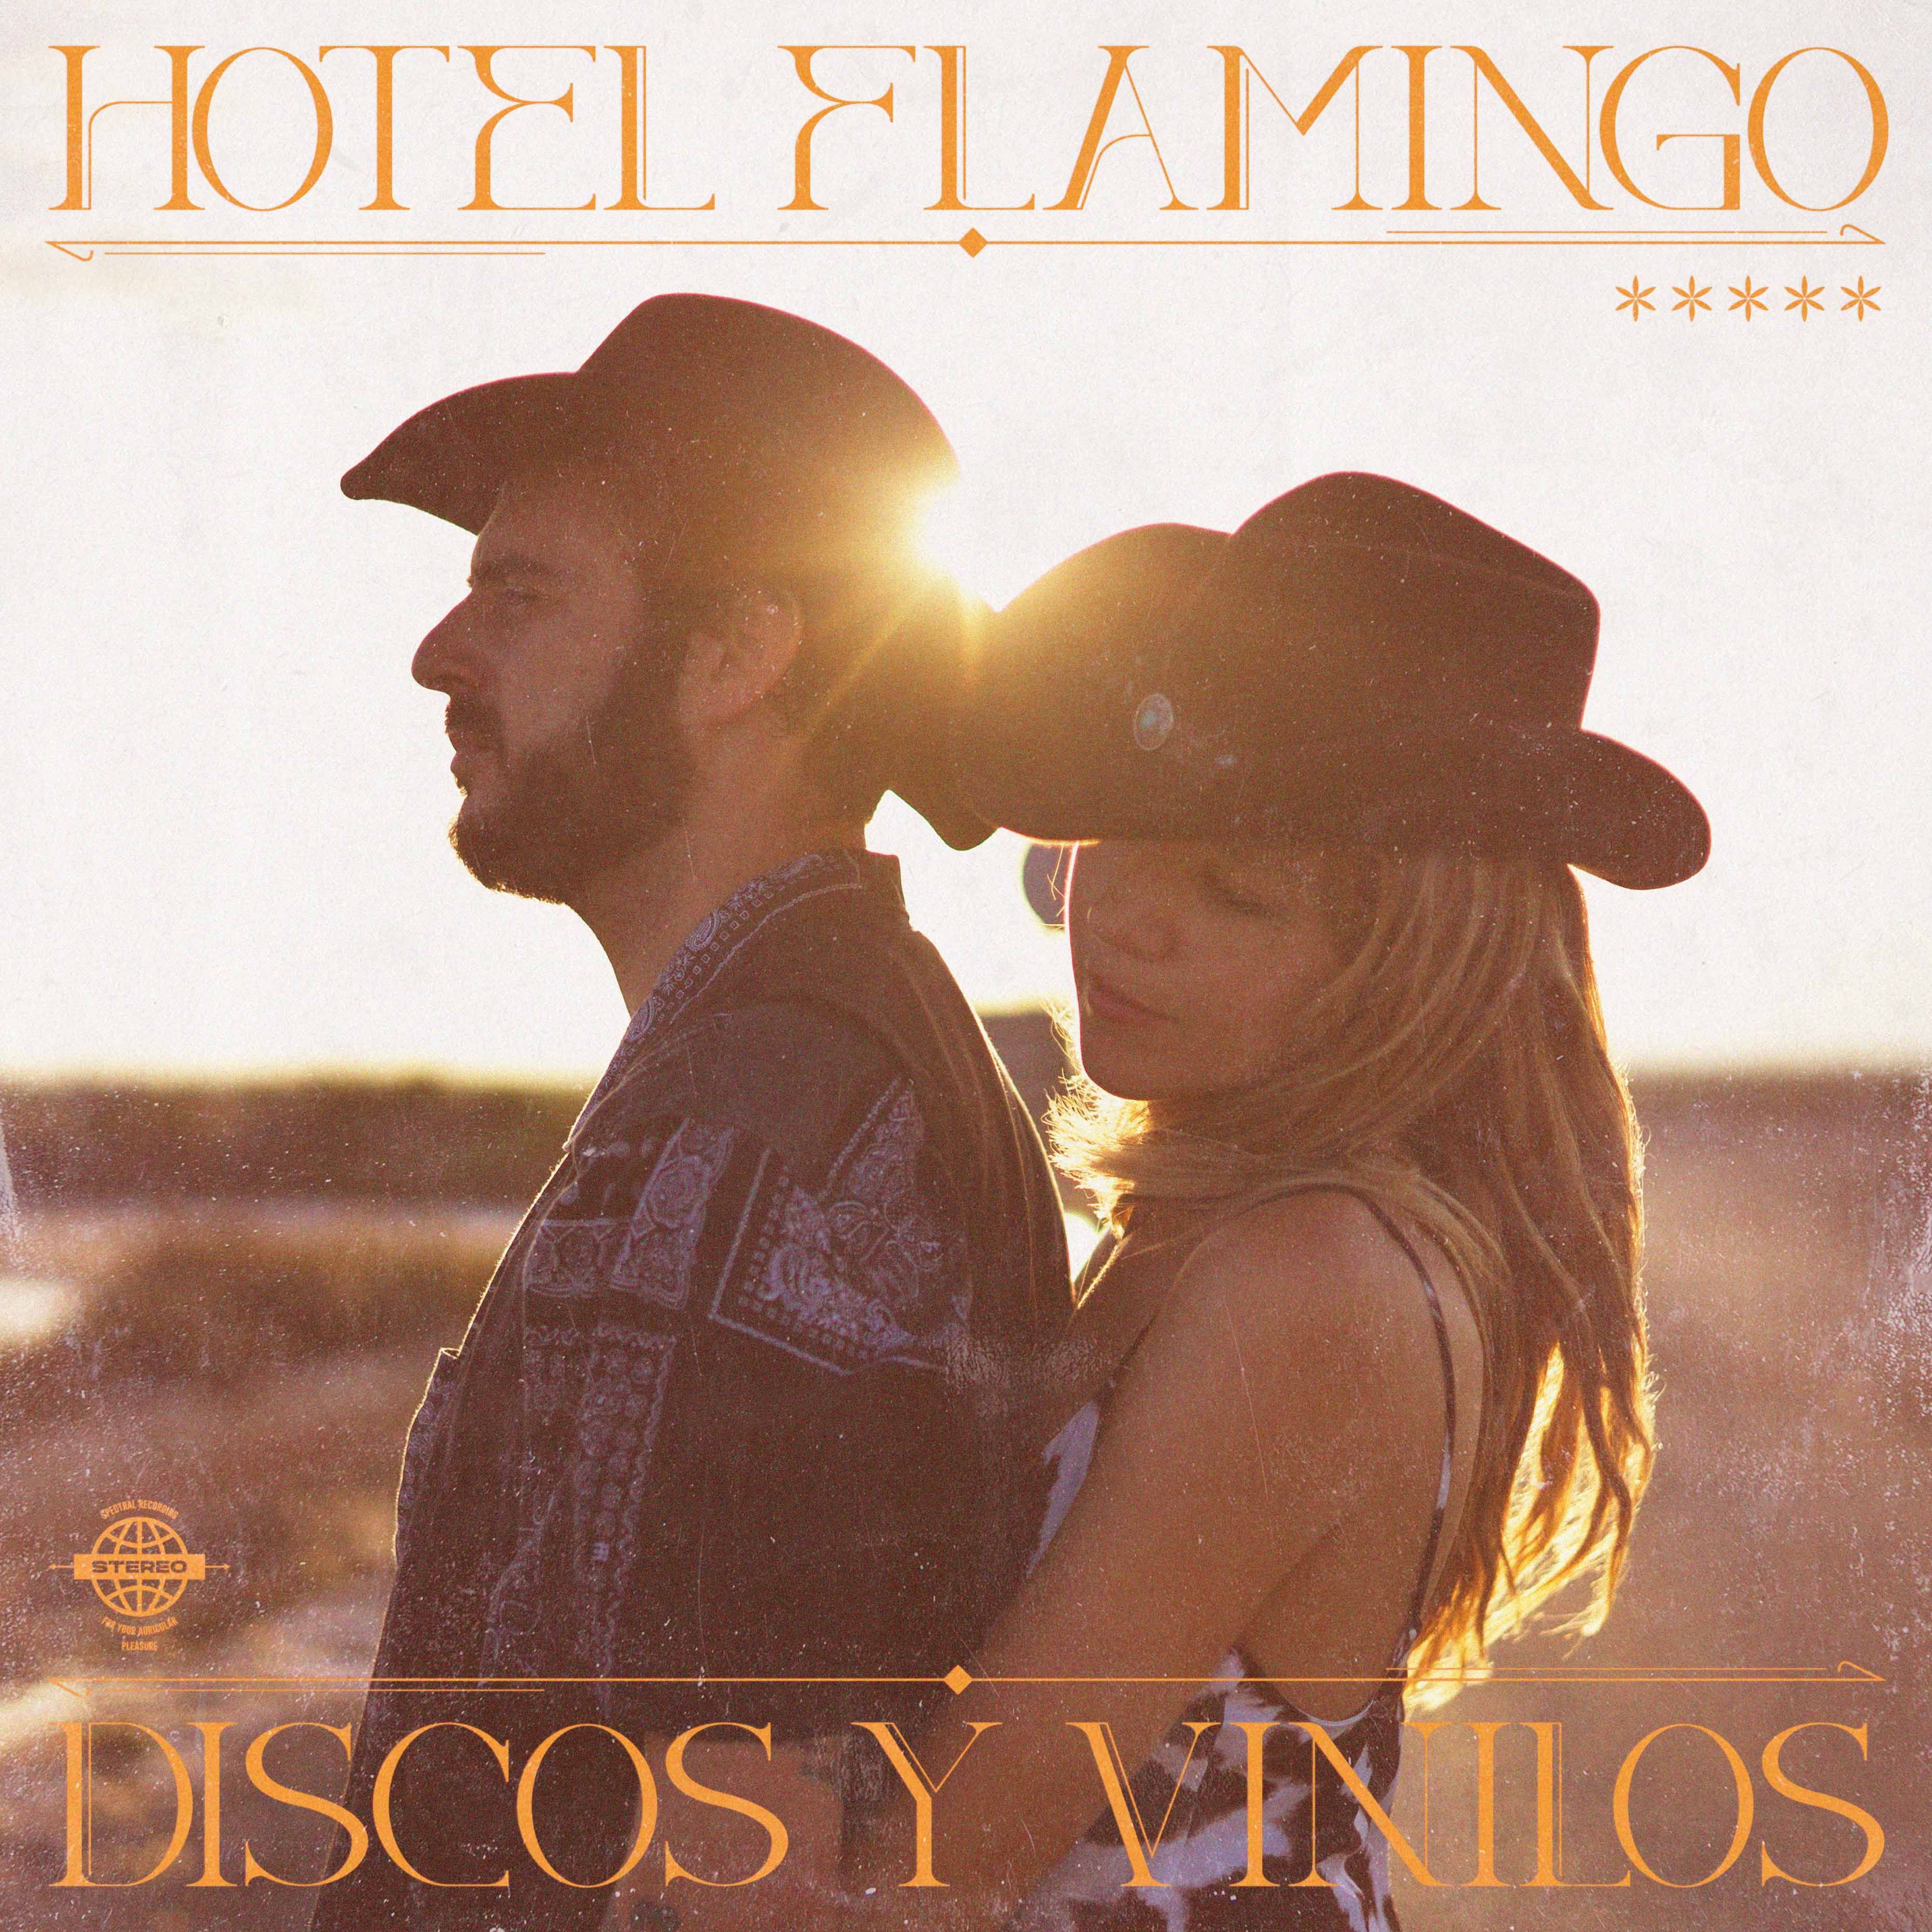 Hotel Flamingo, el grupo formado por Andrea Guasch y Rosco, presenta su primer disco